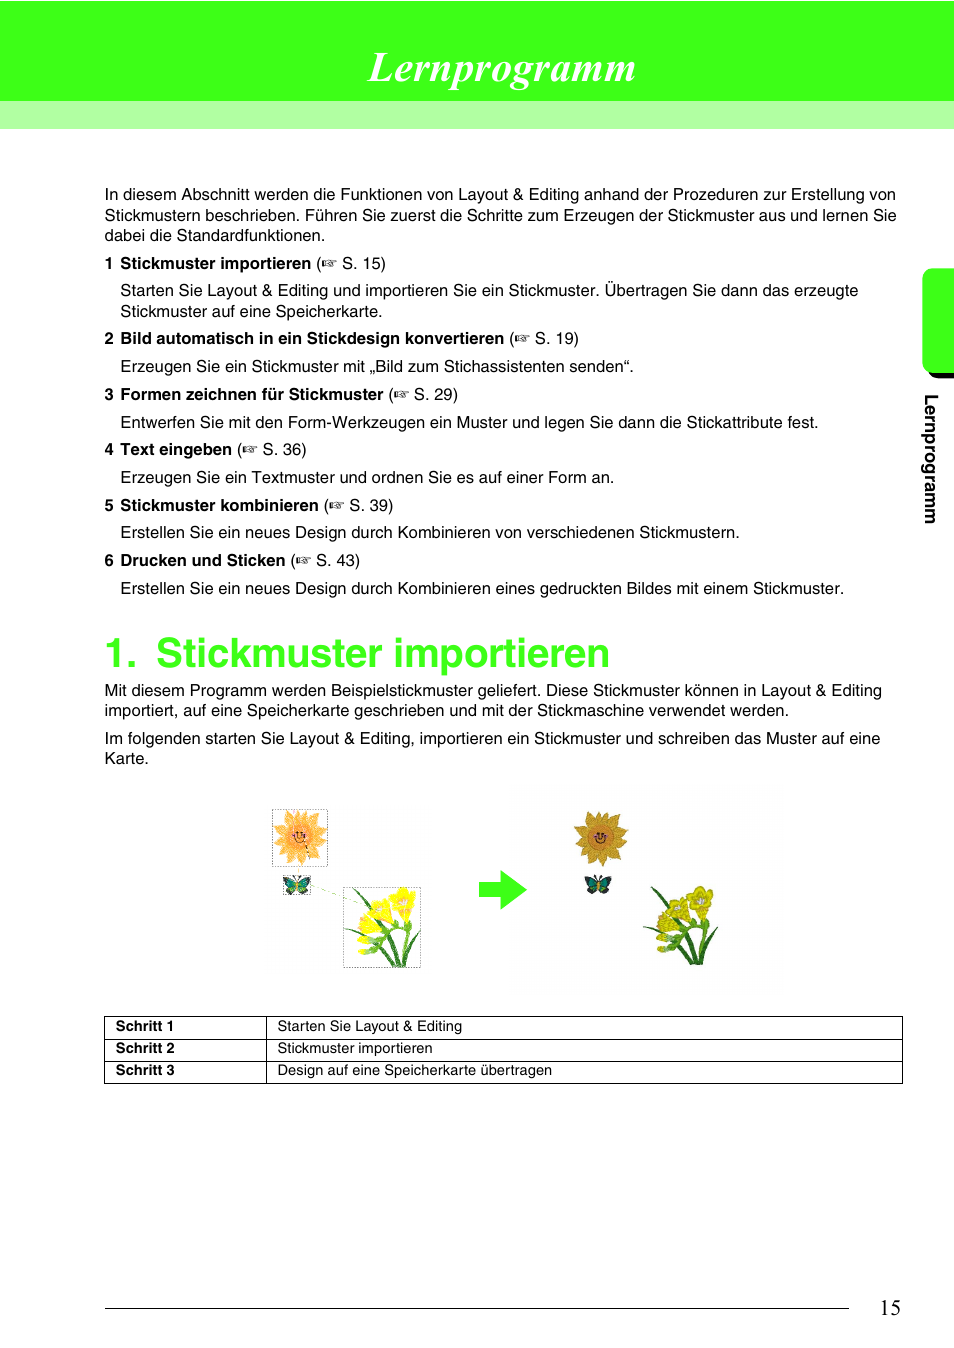 Lernprogramm, Stickmuster importieren | Brother PE-DESIGN 8 Benutzerhandbuch | Seite 17 / 283